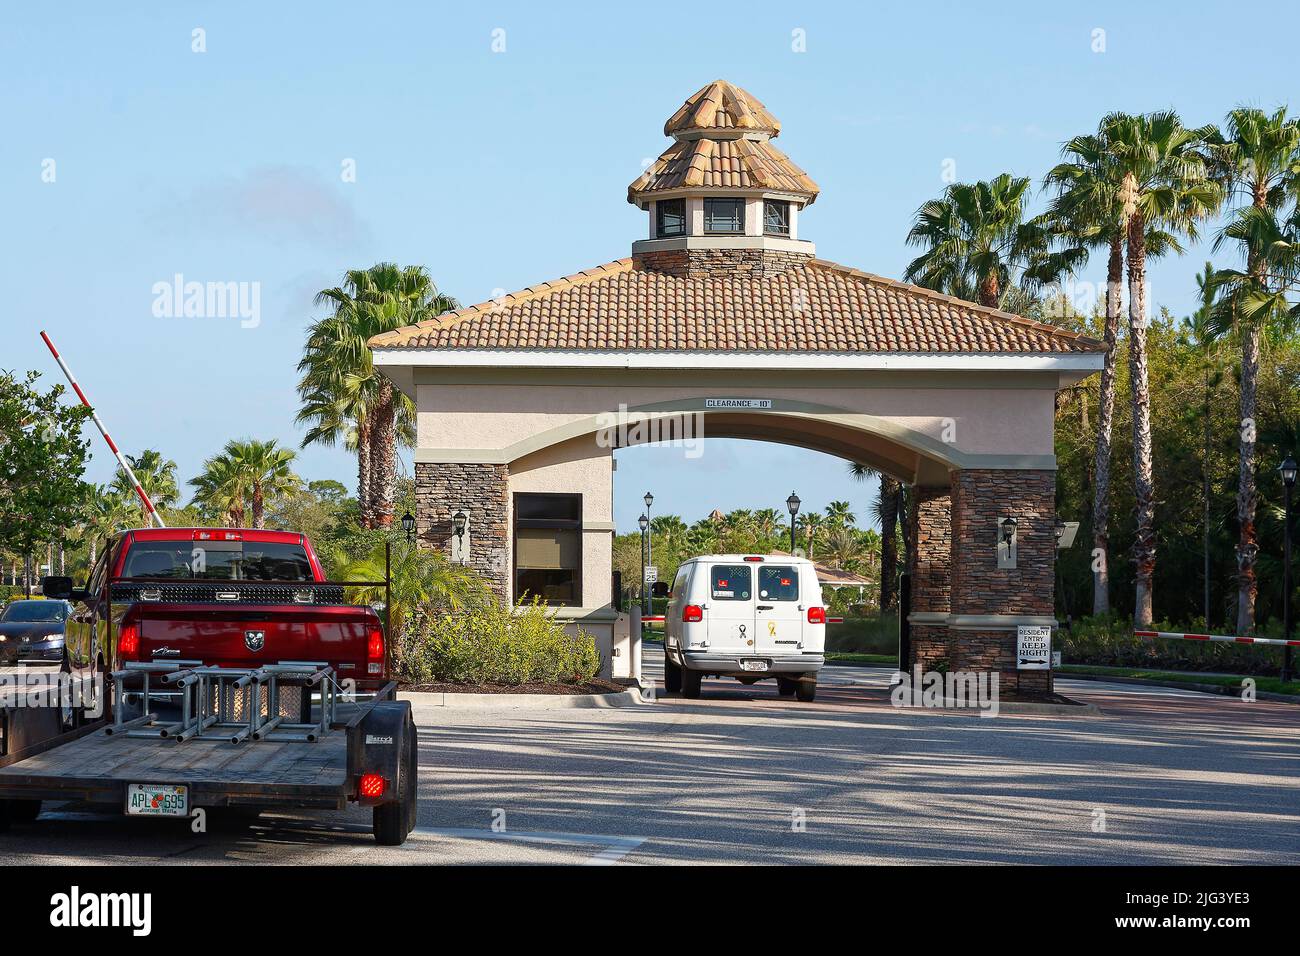 porte d'entrée, communauté fermée, camion en attente d'approbation, barre de sortie relevée, toit en tuiles, palmiers, sécurité, Floride, Venise, FL, été Banque D'Images